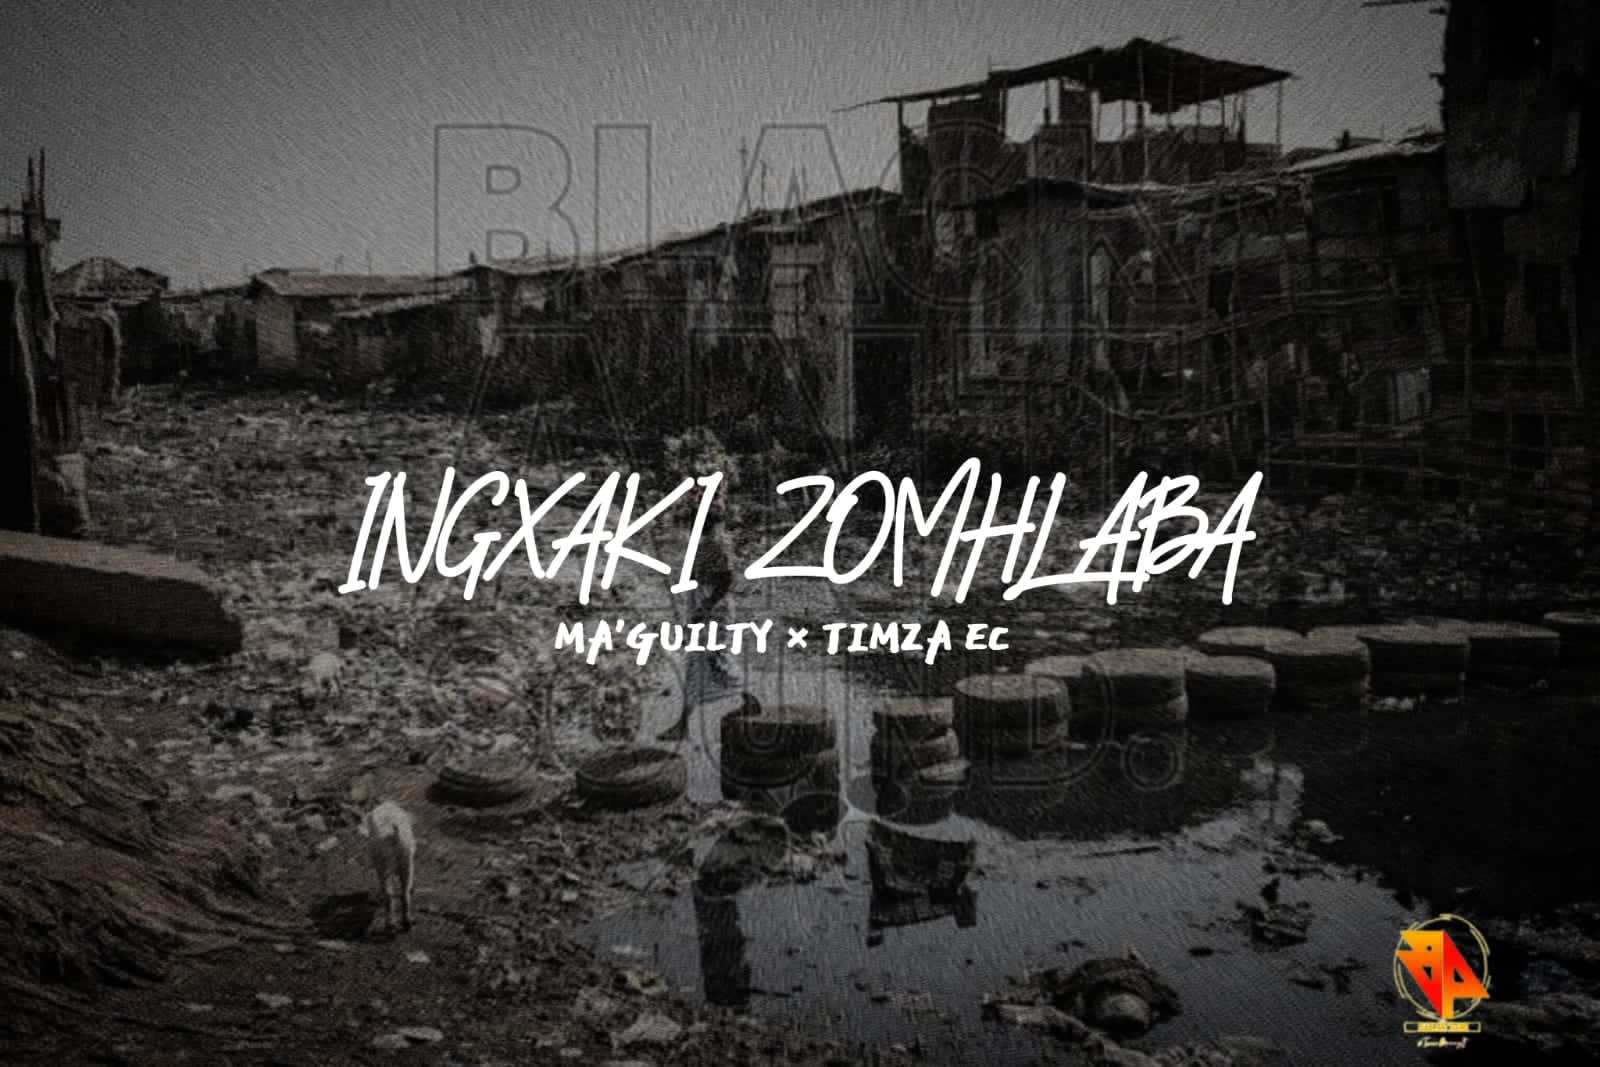 Ingxaki zomhlaba - Timza EC × Ma'guilty